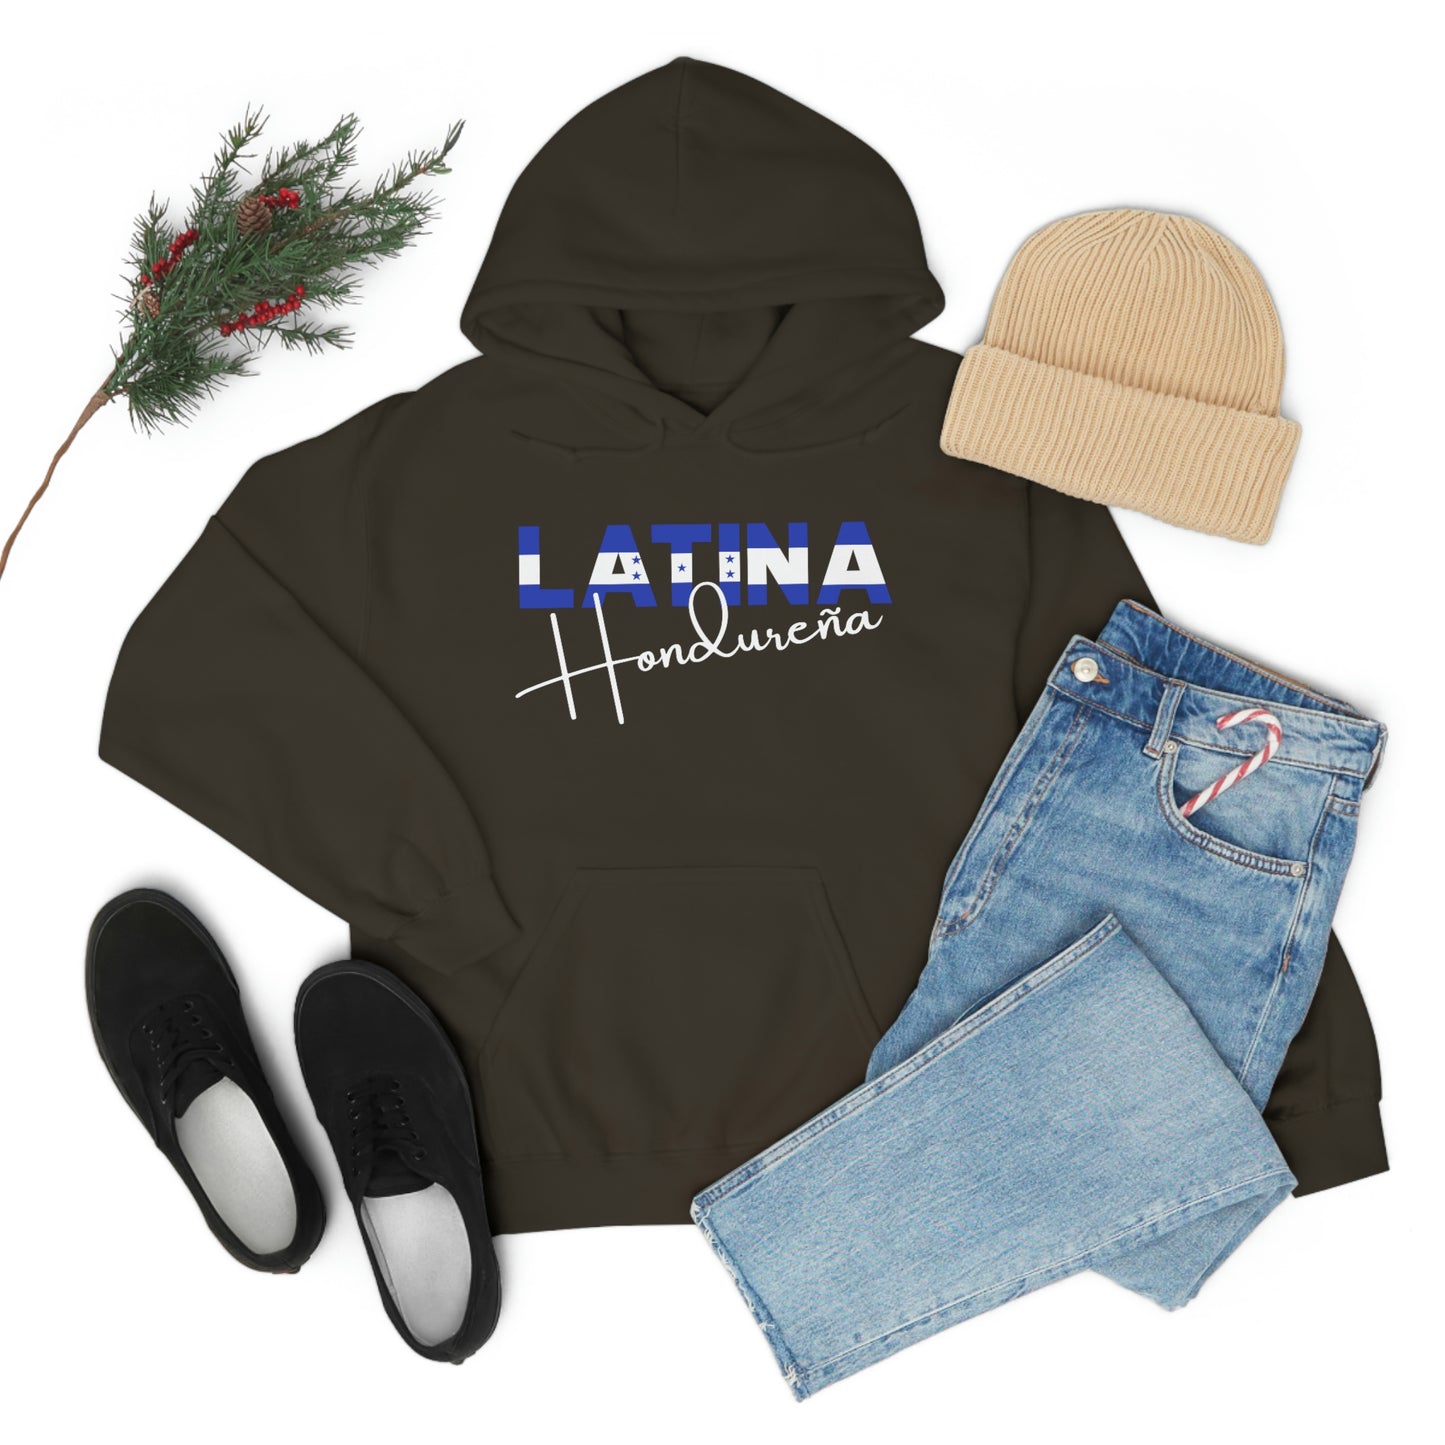 Latina Hondureña, Hoodie